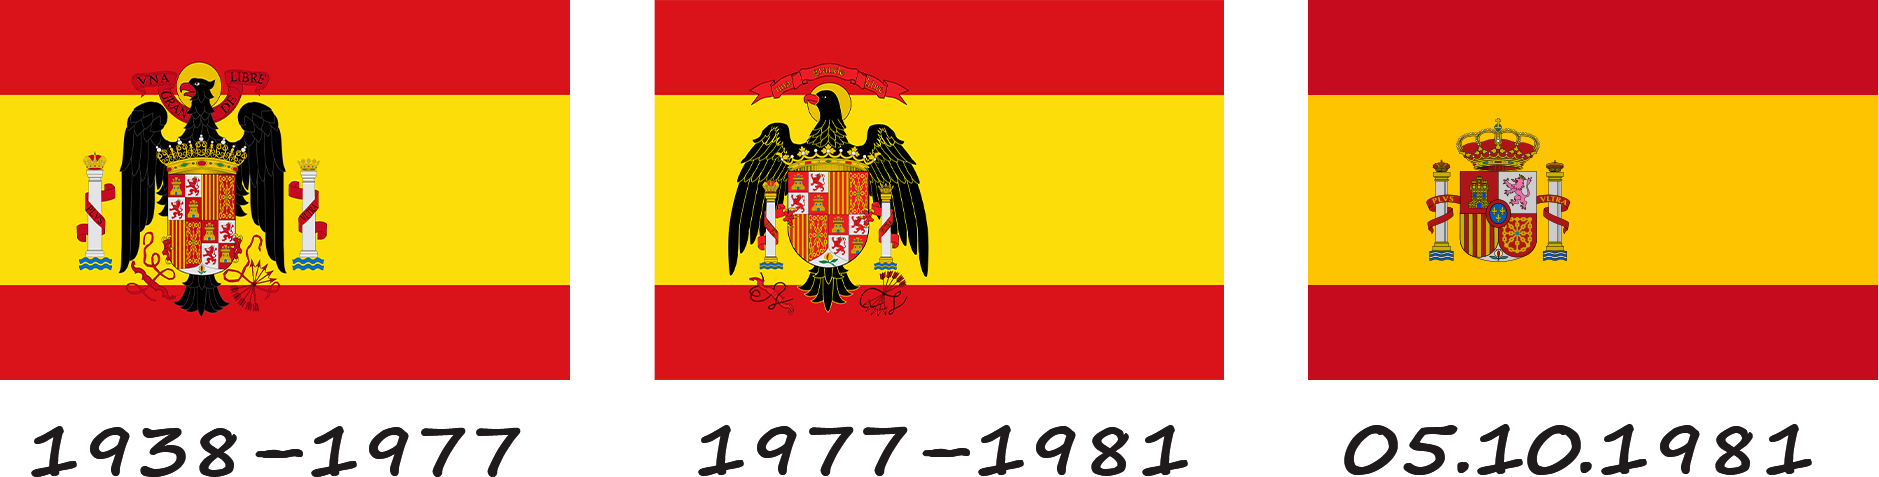 Historia de la bandera española